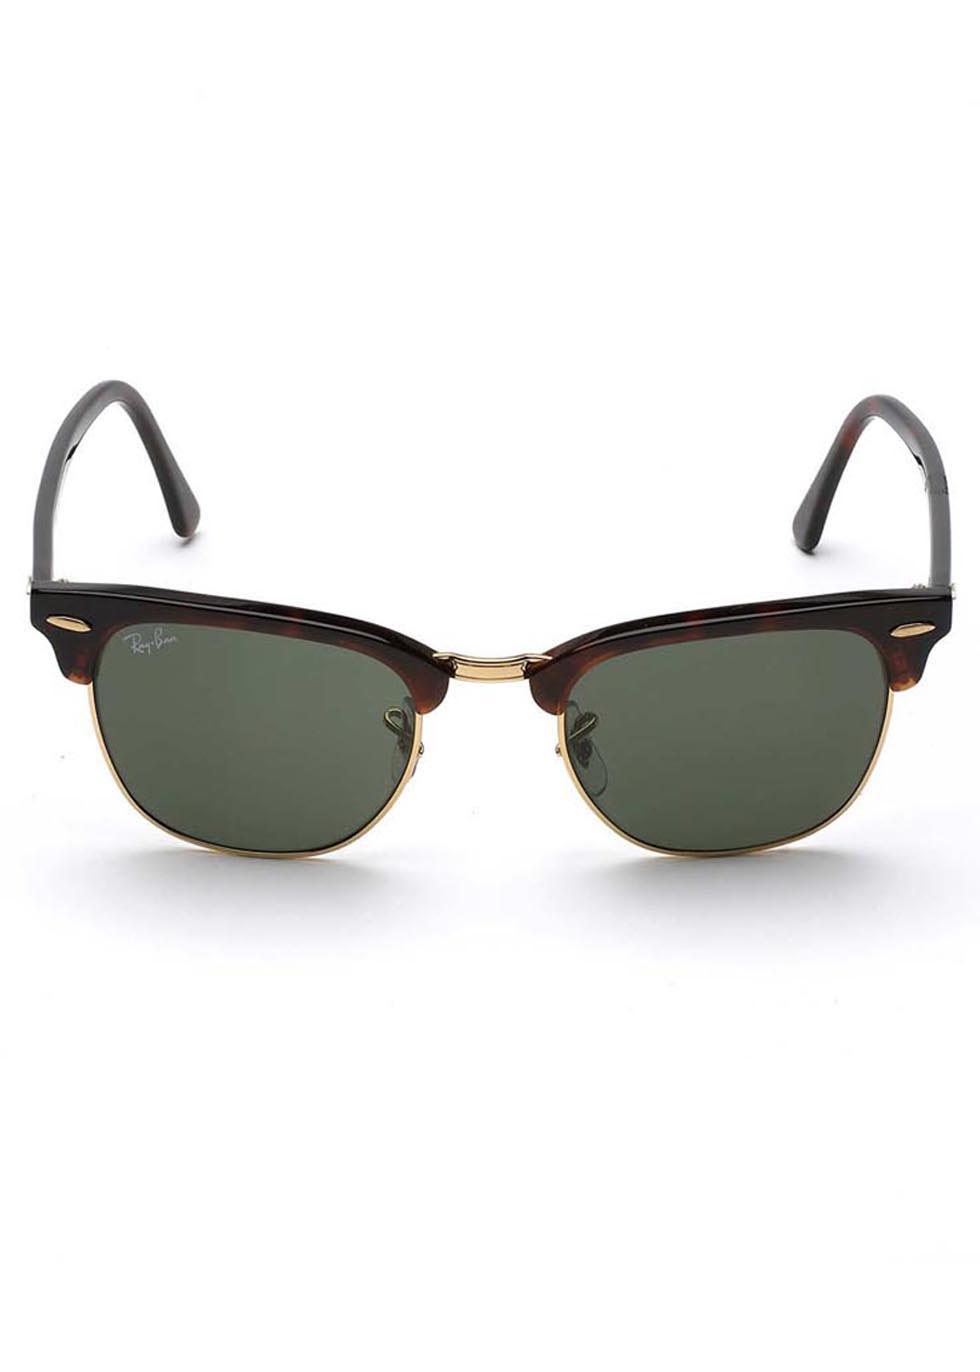 designer clubmaster sunglasses